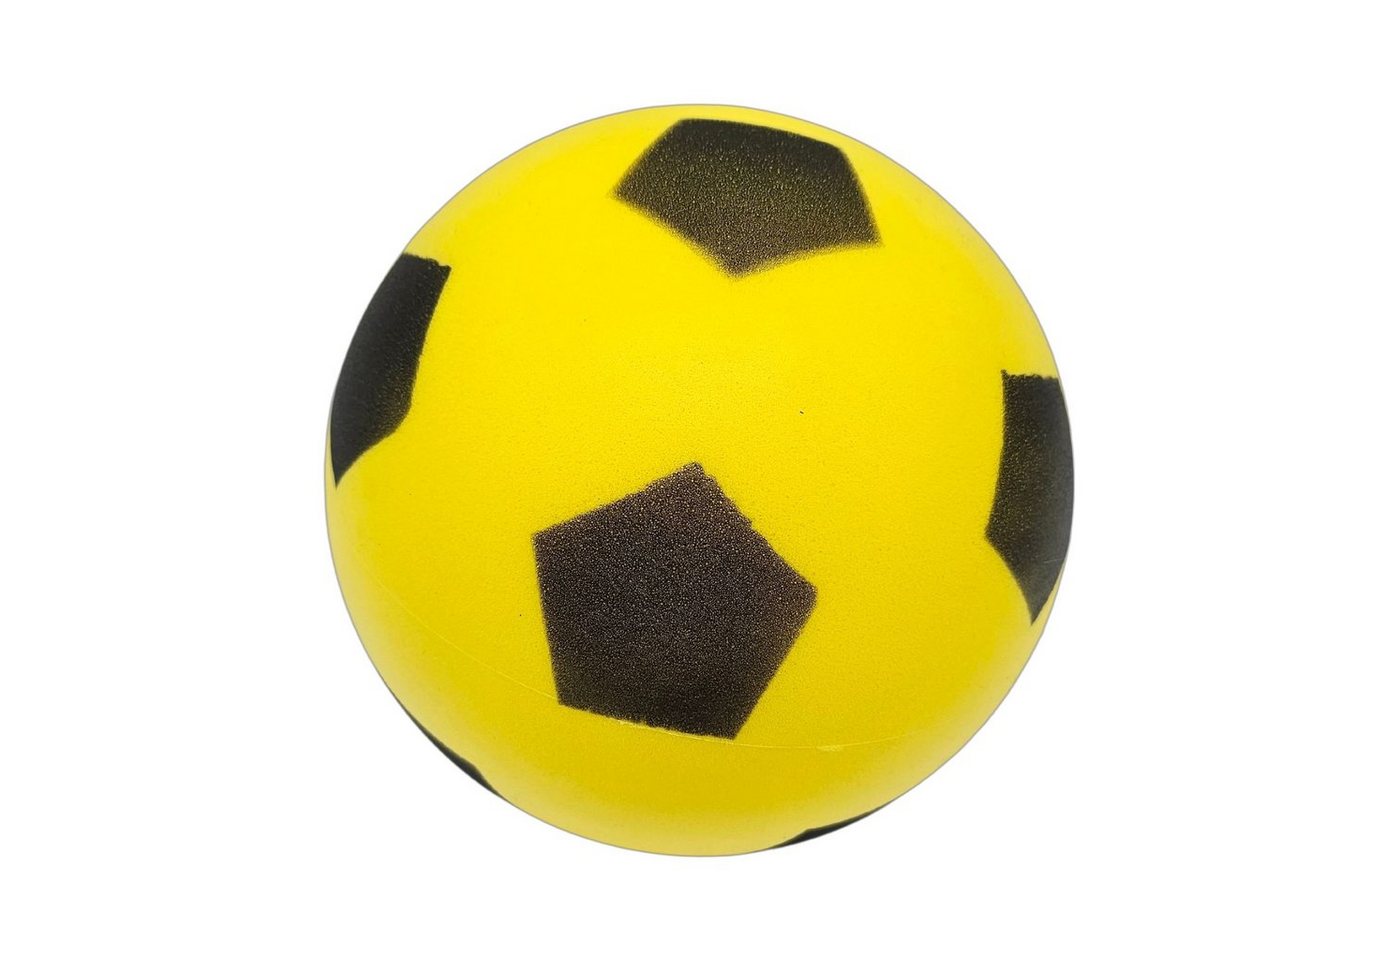 alldoro Softball 63103, Schaumstoffball gelb Ø 19 cm, weicher Ball aus Schaumstoff von alldoro